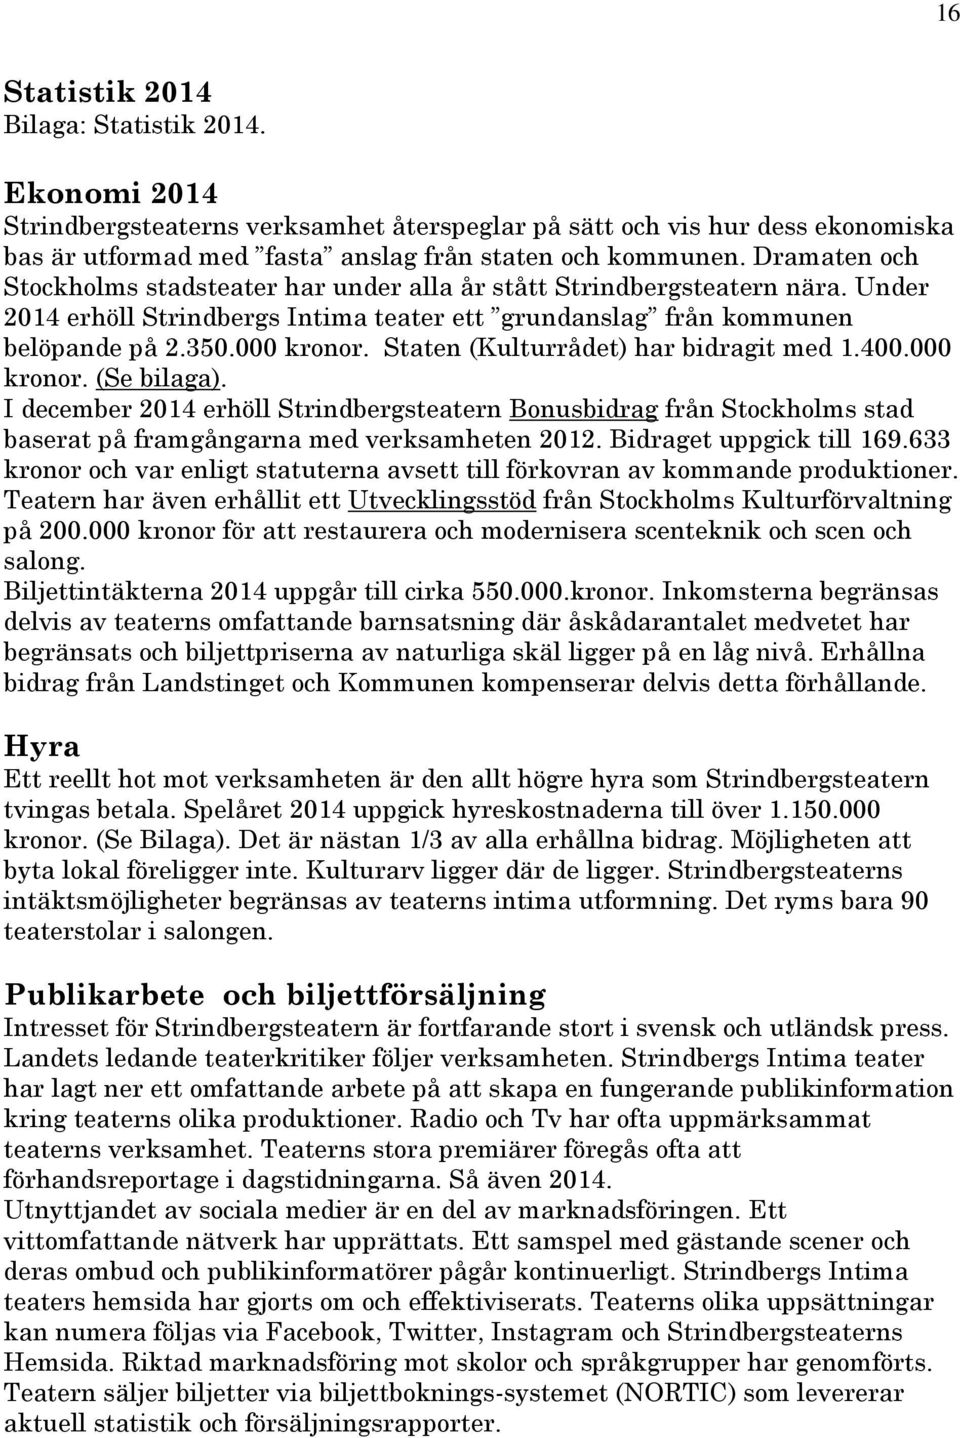 Staten (Kulturrådet) har bidragit med 1.400.000 kronor. (Se bilaga). I december 2014 erhöll Strindbergsteatern Bonusbidrag från Stockholms stad baserat på framgångarna med verksamheten 2012.